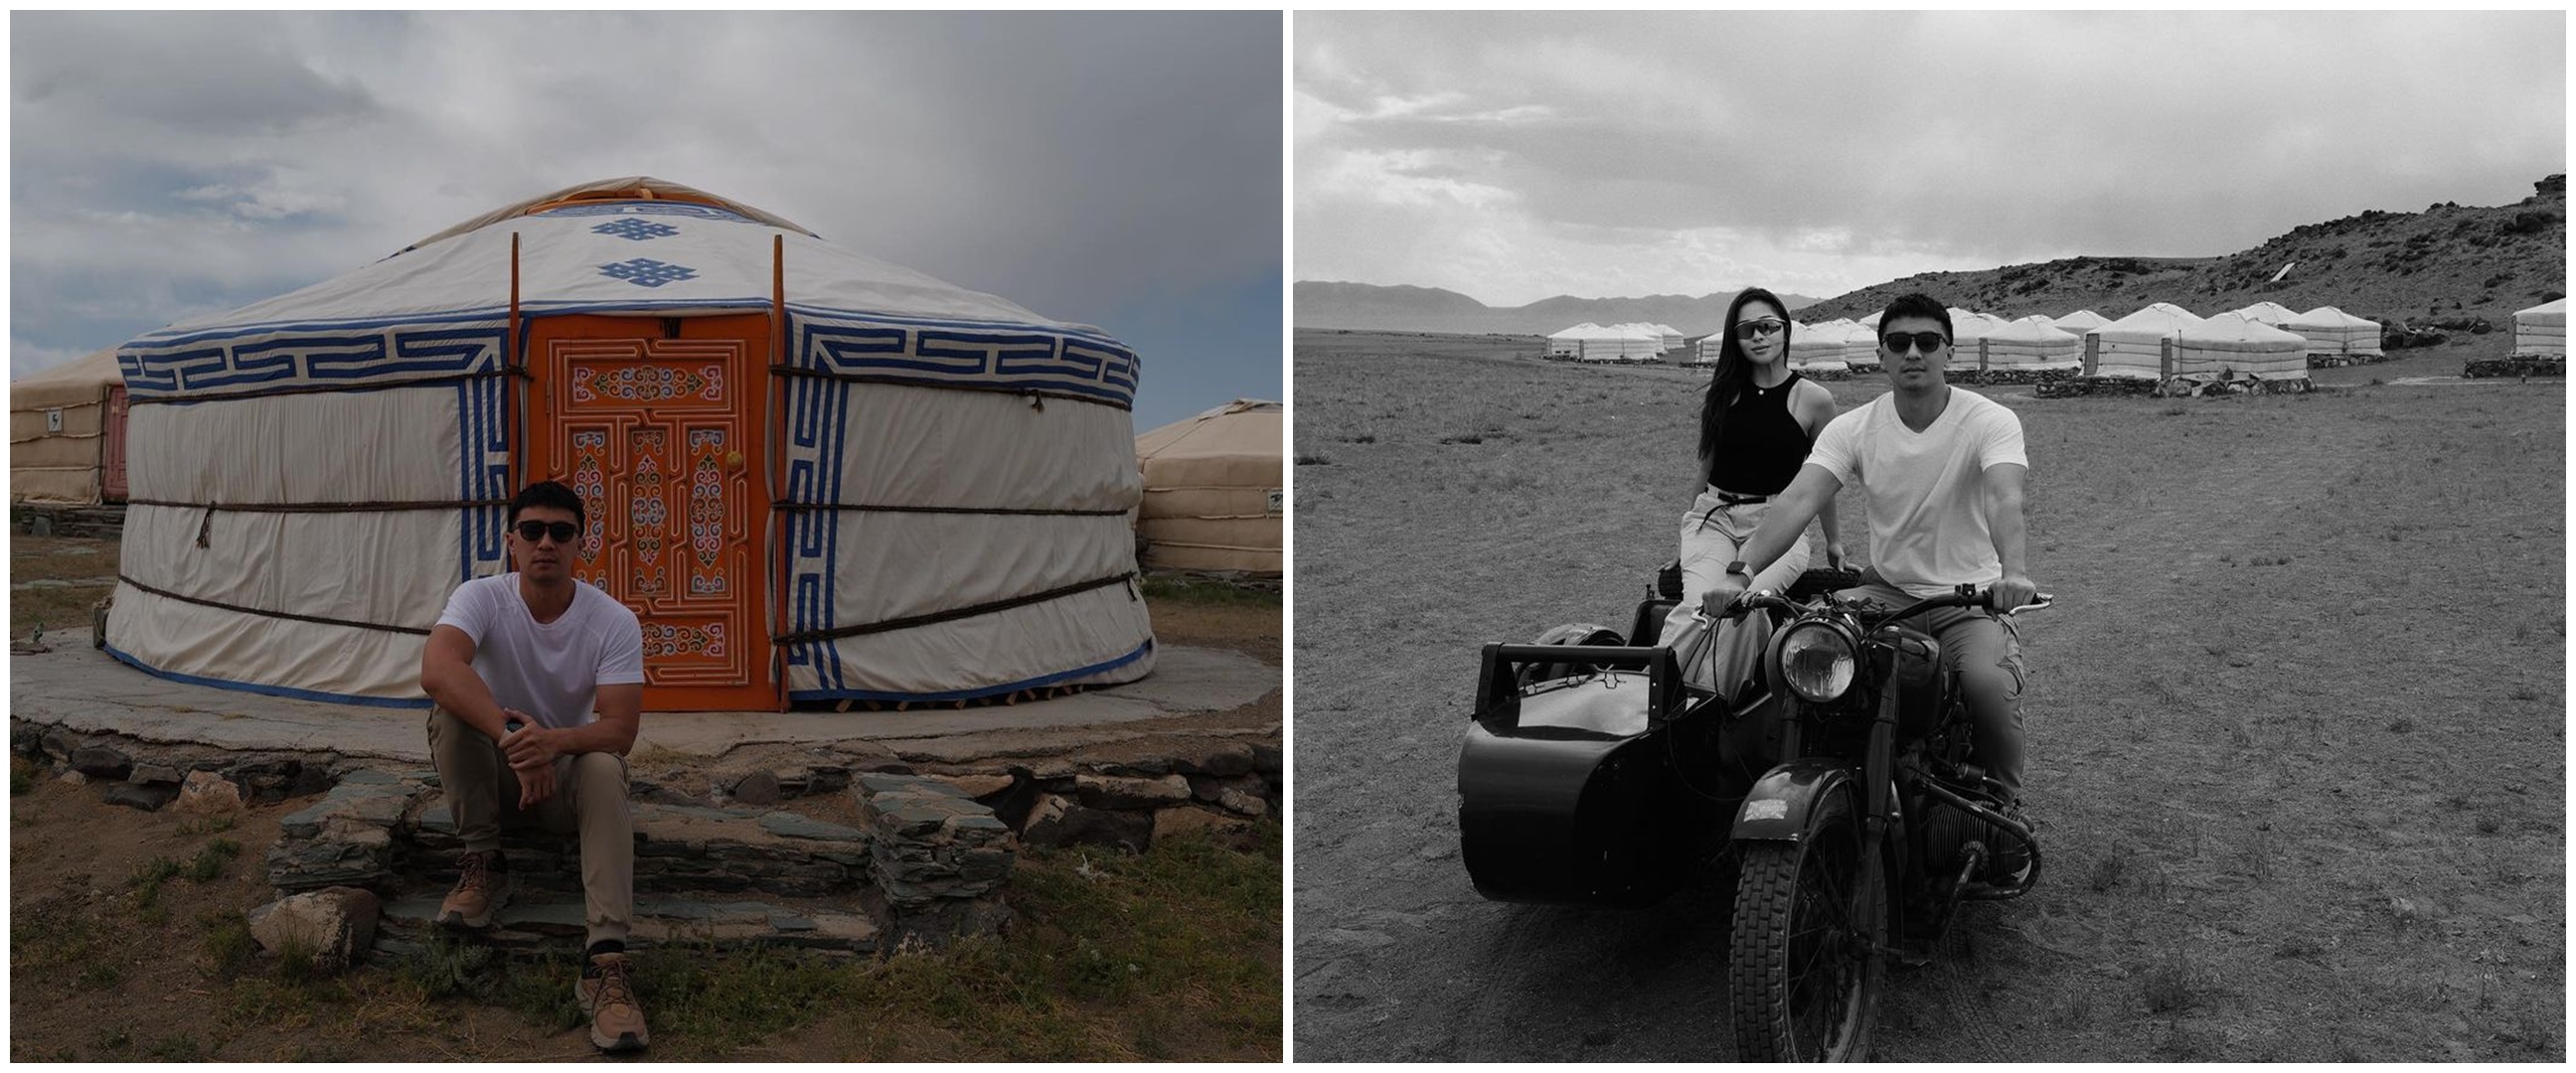 Menginap di tengah gurun saat liburan di Mongolia, ternyata begini 8 potret isi hotel Nikita Willy